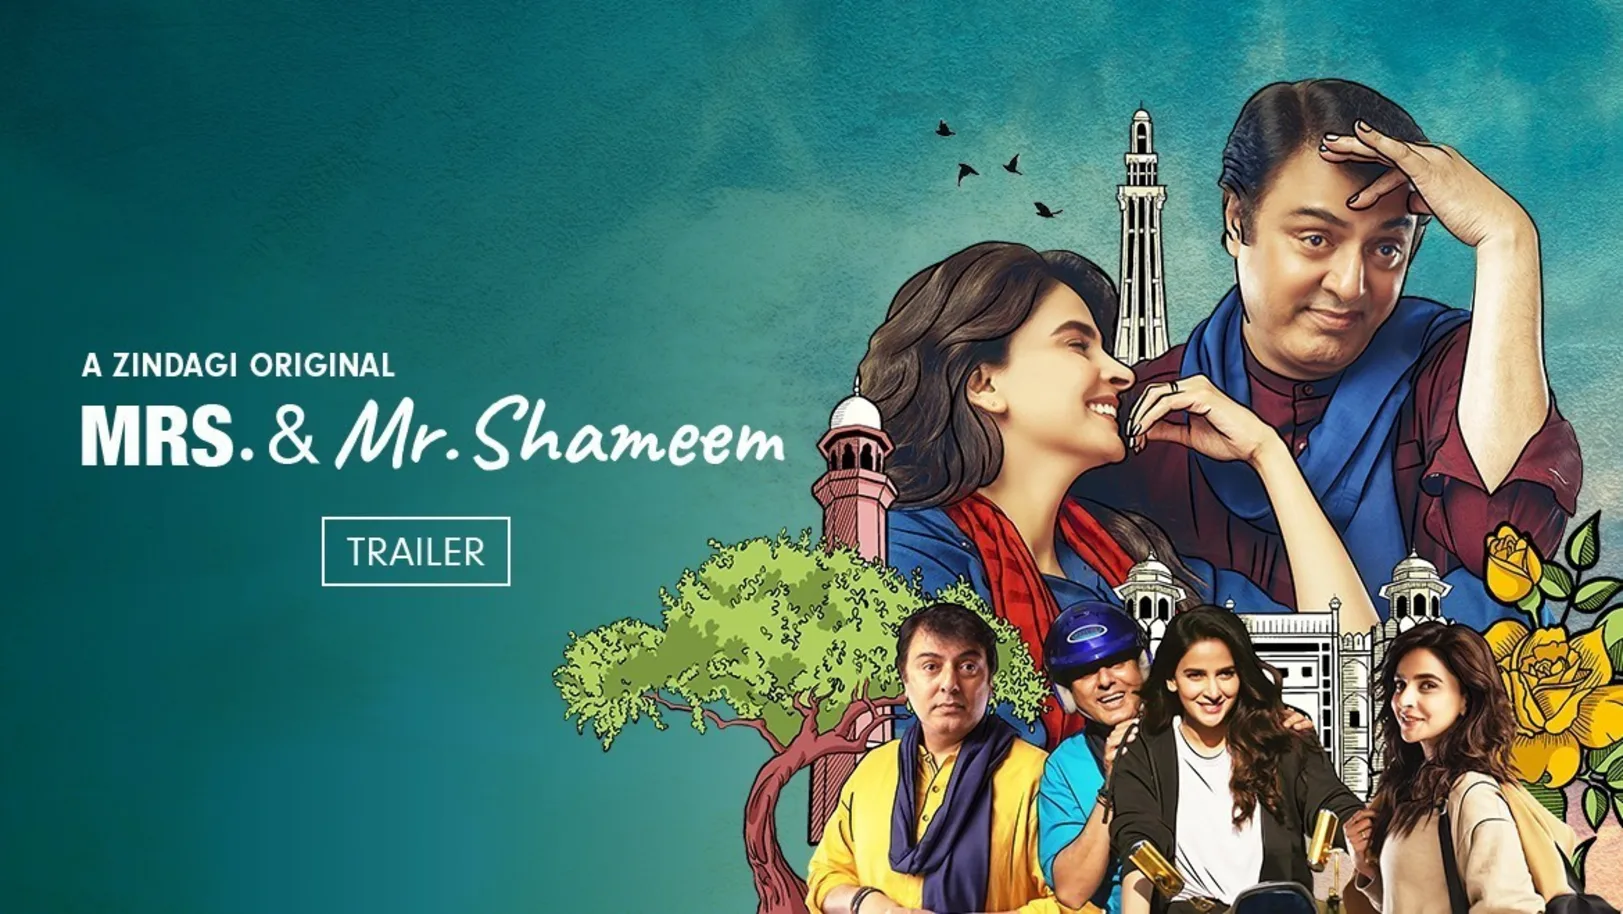 Mrs. & Mr. Shameem | Trailer